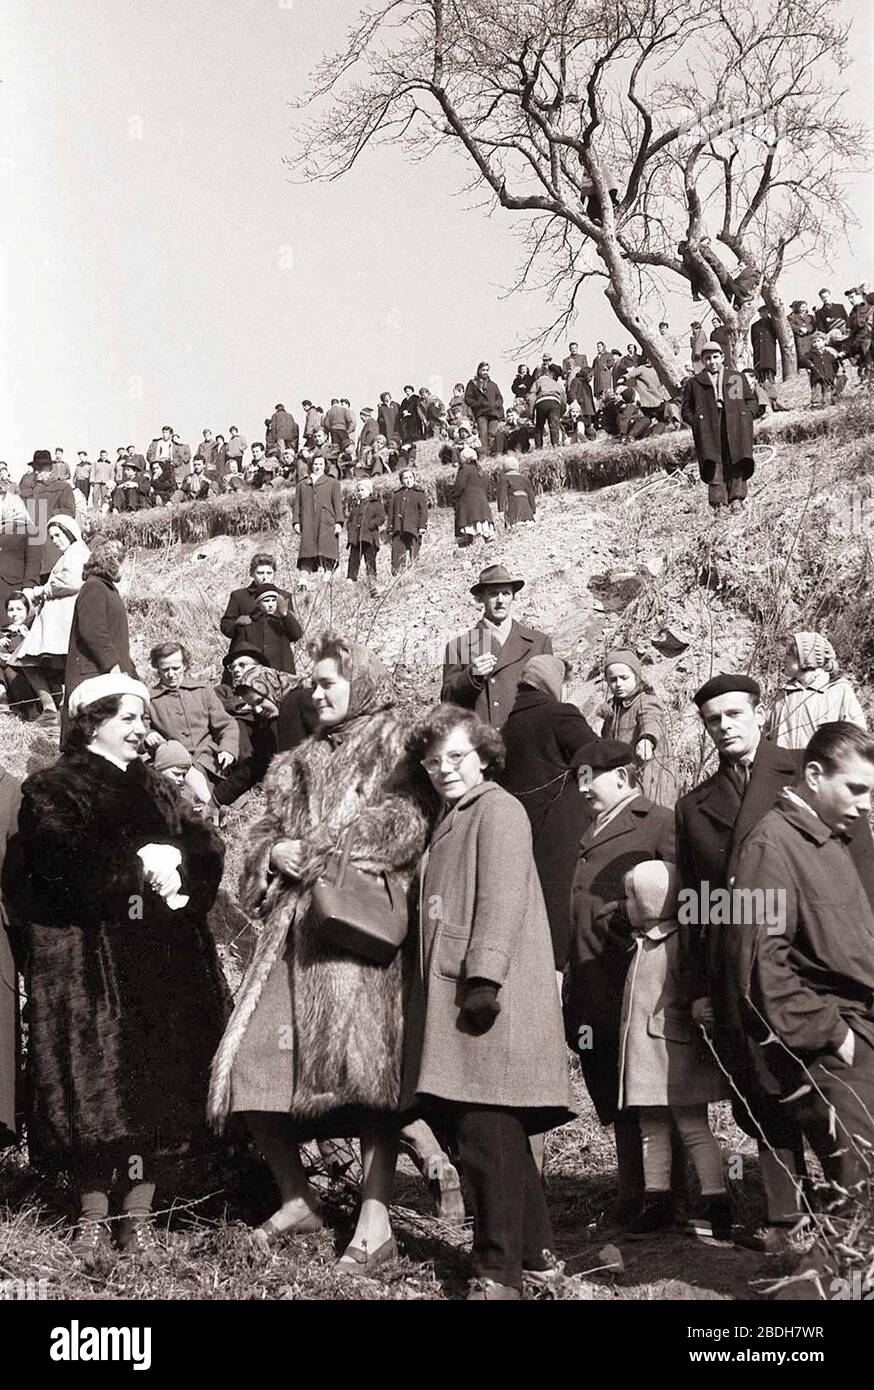 15. febbraio 1959, Maribor: Turistično olepševalno društvo Maribor je priredilo danes v nedeljo , ob dveh popoldne veliko drsalno revijo pri Treh ribnikih. Programma je obsegal 12 točk posameznih drsalcev in en skupinski nastop. Na drsalni revivji so nastopilii najboljši drsalci - lanskoletni državni prvaki v drsanju. Organizator je med drugim poskrbel, da so gledalci med nastopom lahko dobili topel čaj in žgane pijače, da ne bi koga le preveč zeblo, klujb zanimivemu programu, ki se je odvijal. Foto Stock